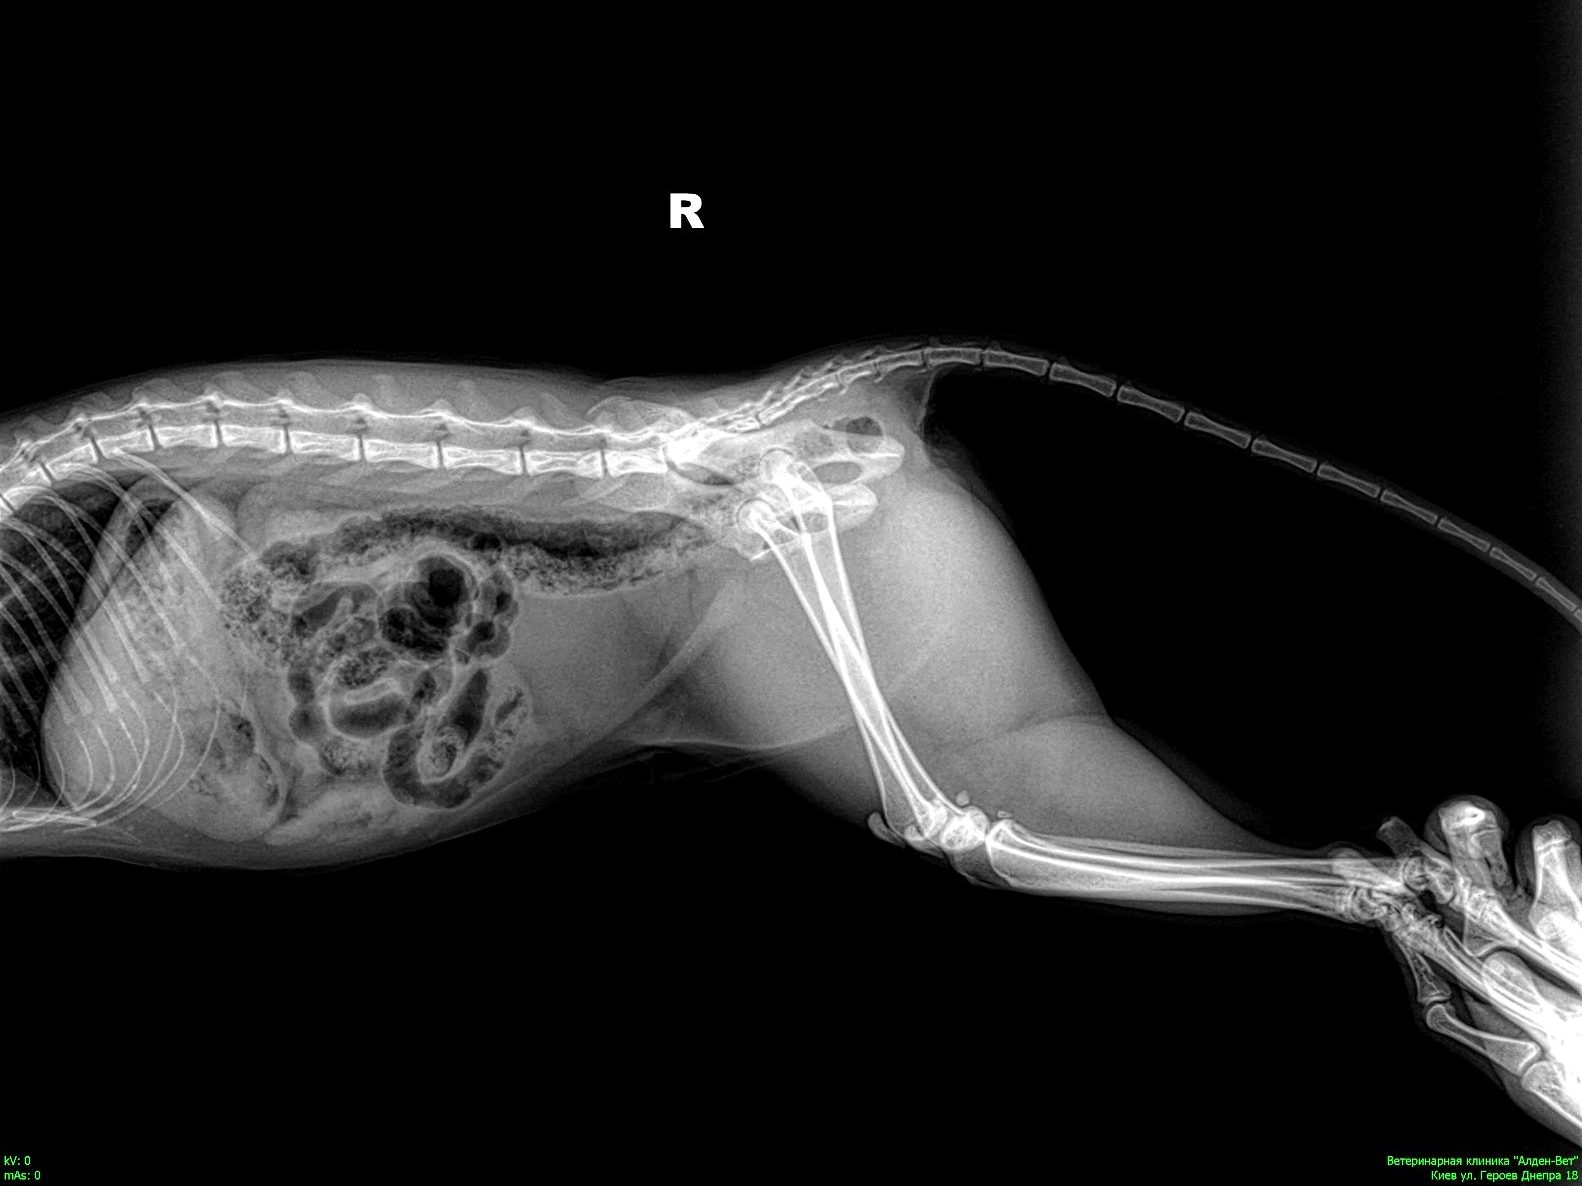 Завершилось оновлення рентгенографічного обладнання у ветеринарному діагностичному центрі на вул. Героїв Дніпра, 18